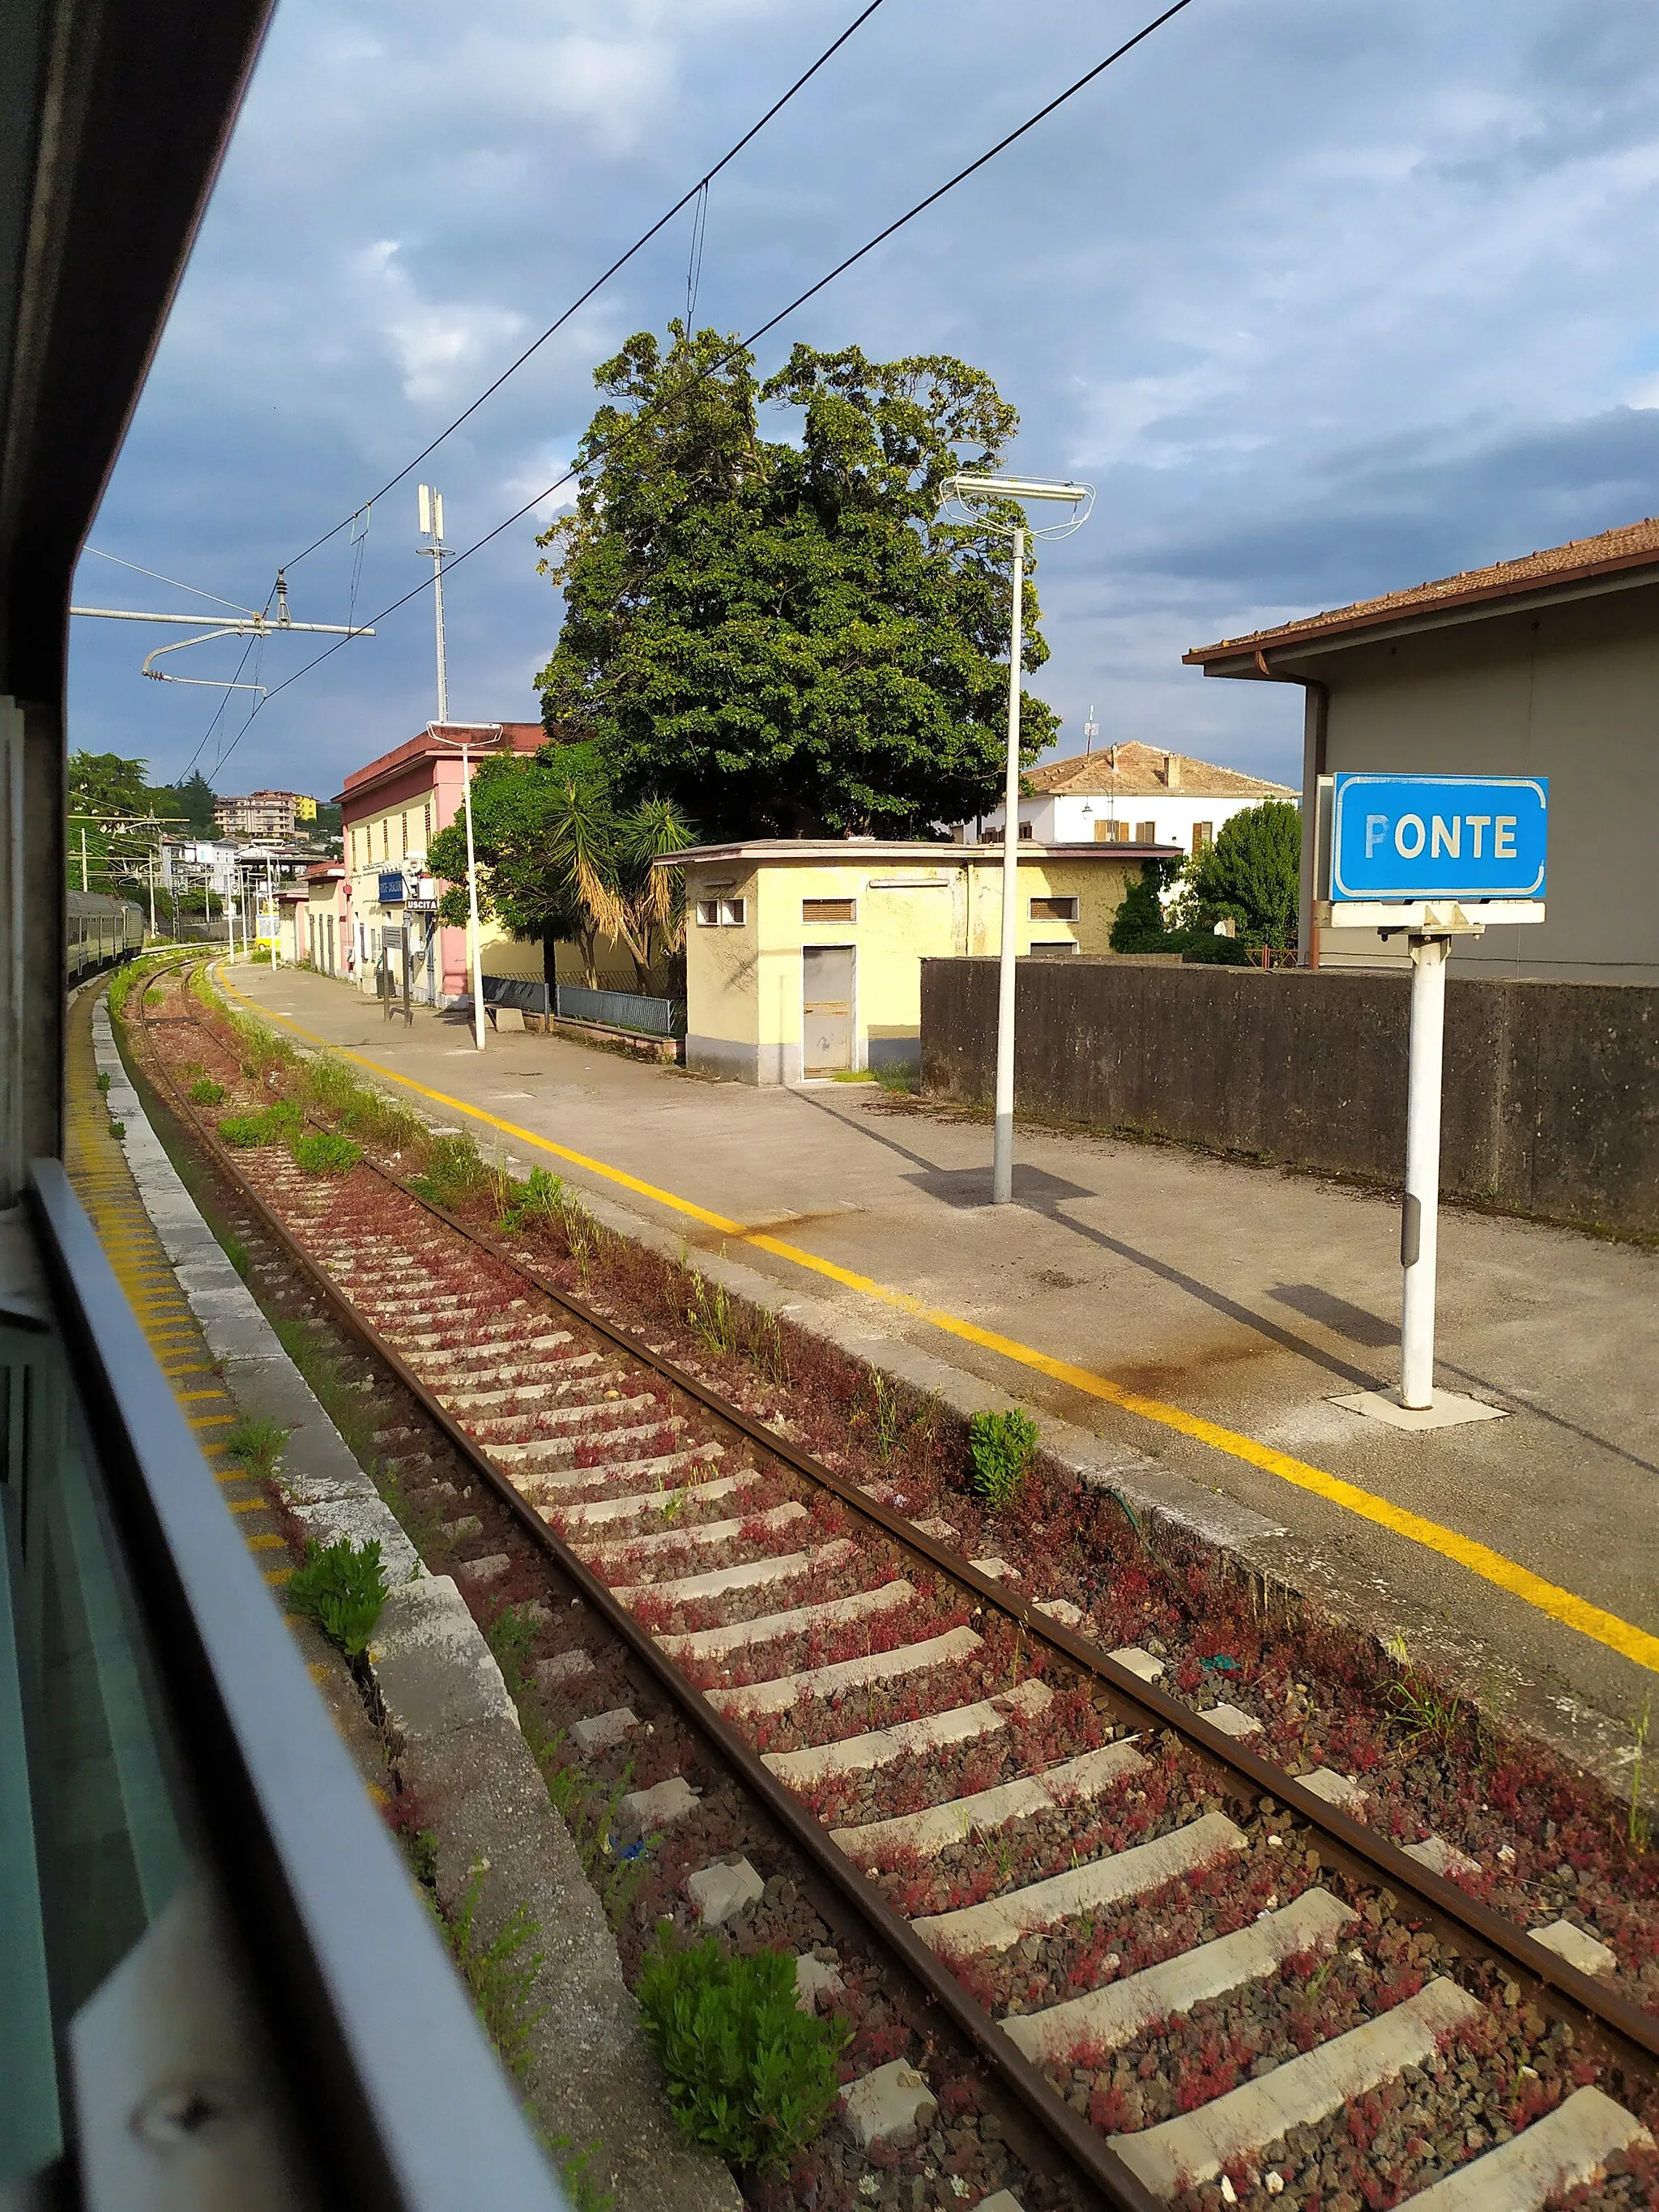 Photo showing: Accesso alla stazione di Ponte - Casalduni (BN) dal lato est (Napoli), fotografato da un treno in transito sul binario 2.